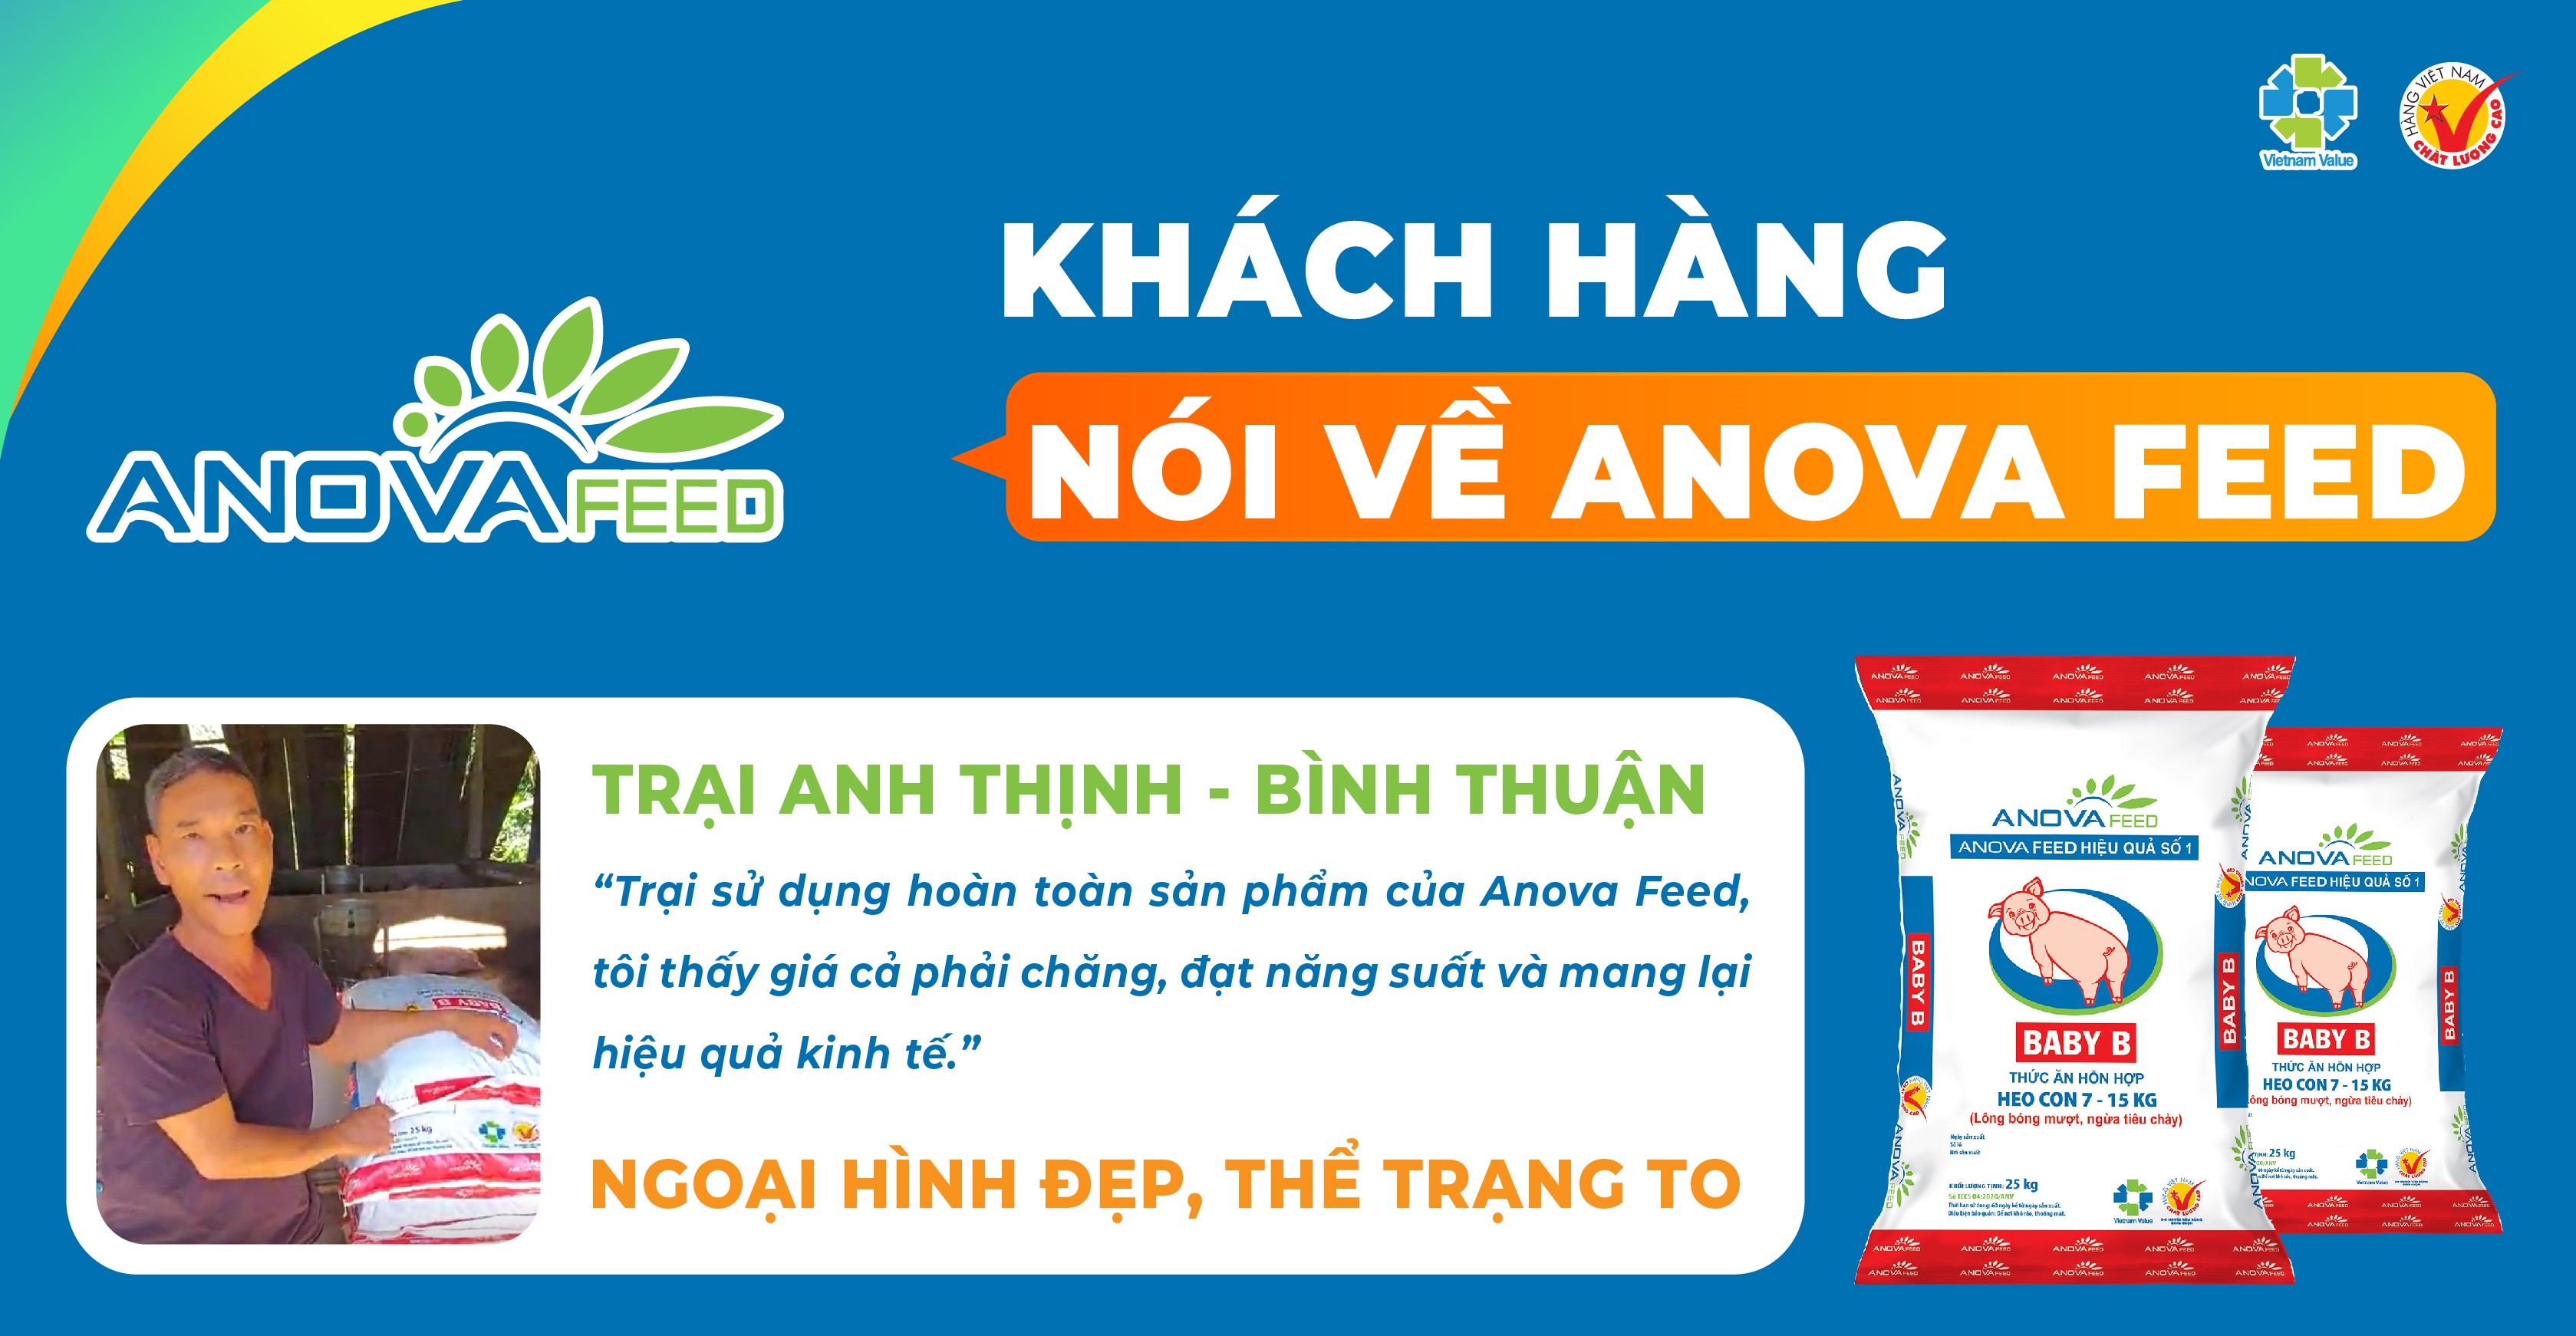 Khách hàng nói về Anova Feed - Trại Anh Thinh (Bình Thuận)